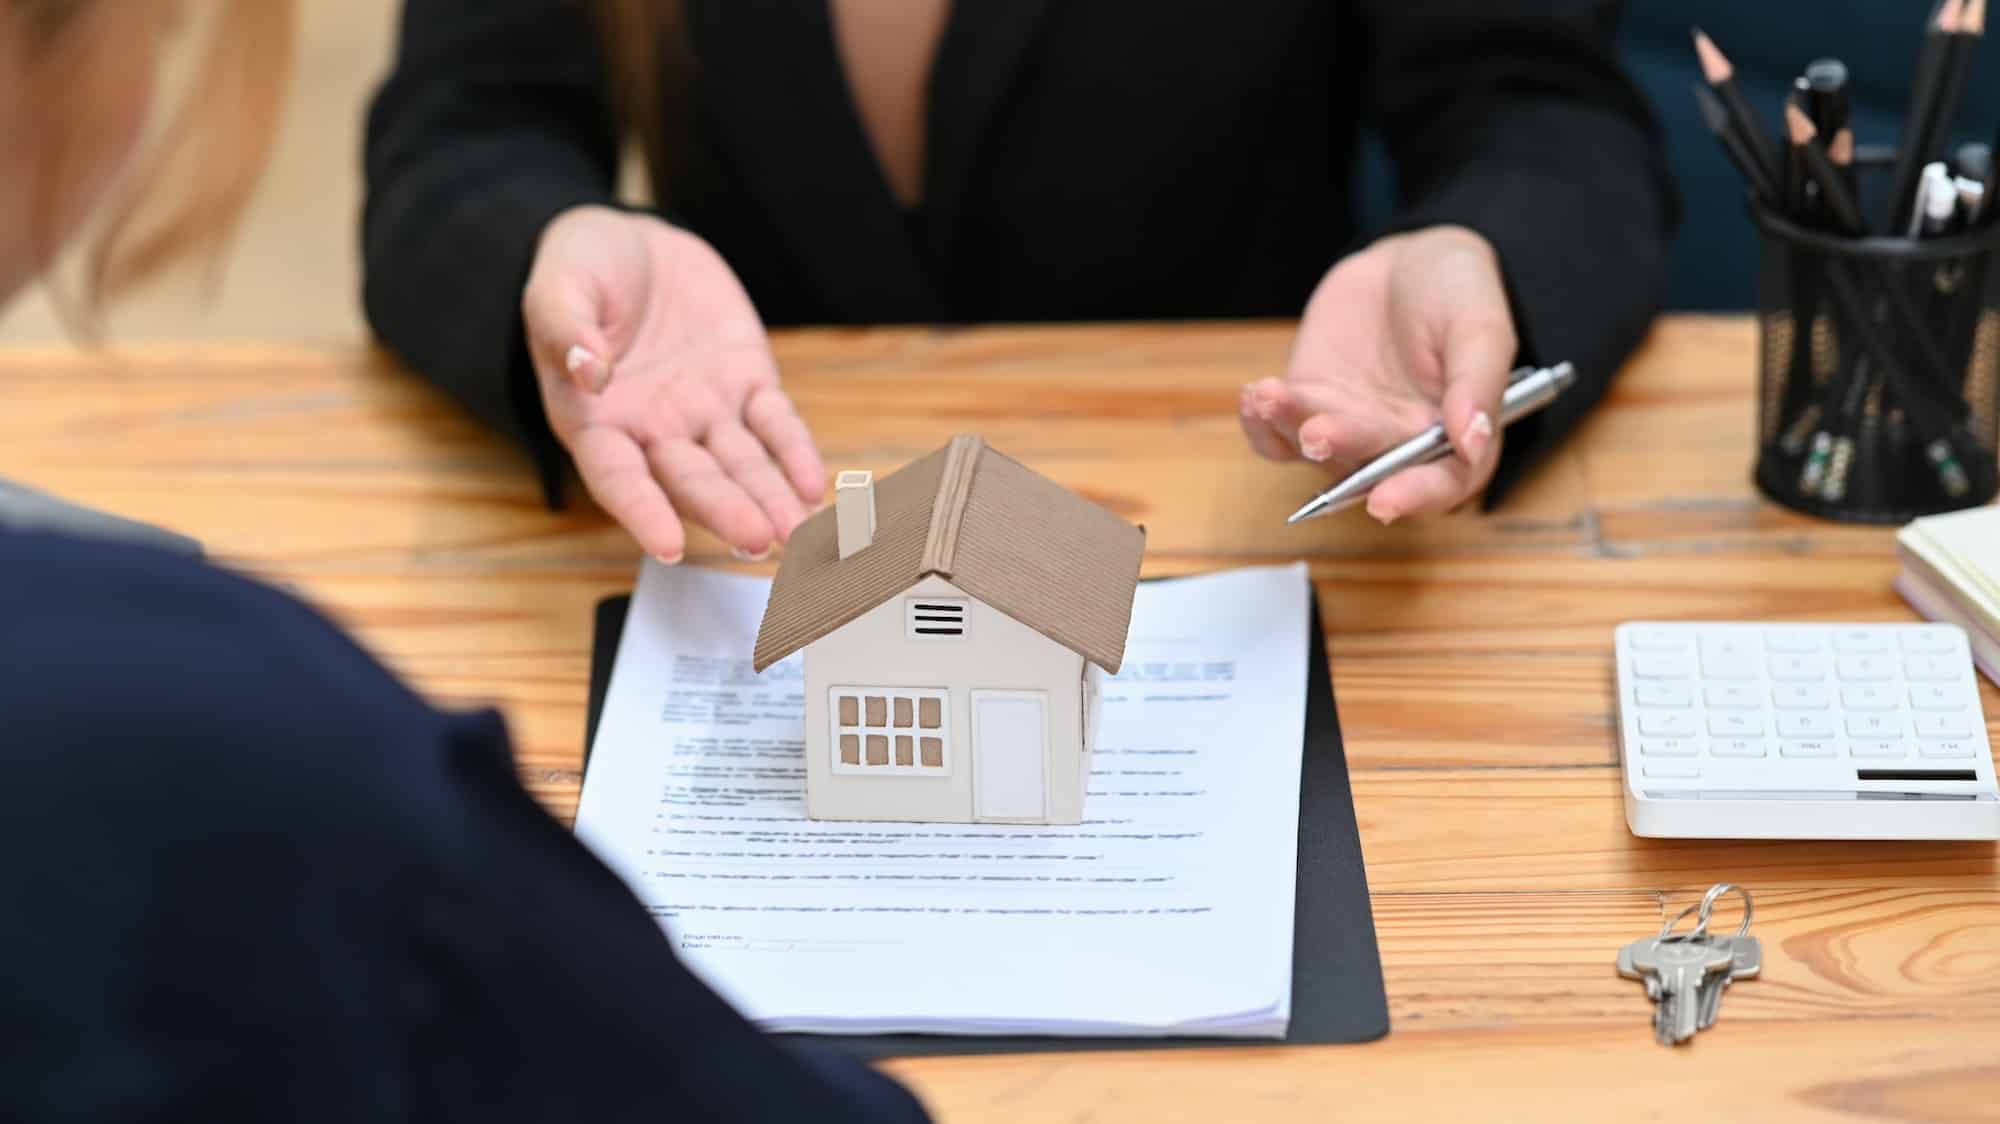 Acheter une maison neuve a-t-il des avantages pour le futur acquéreur ?